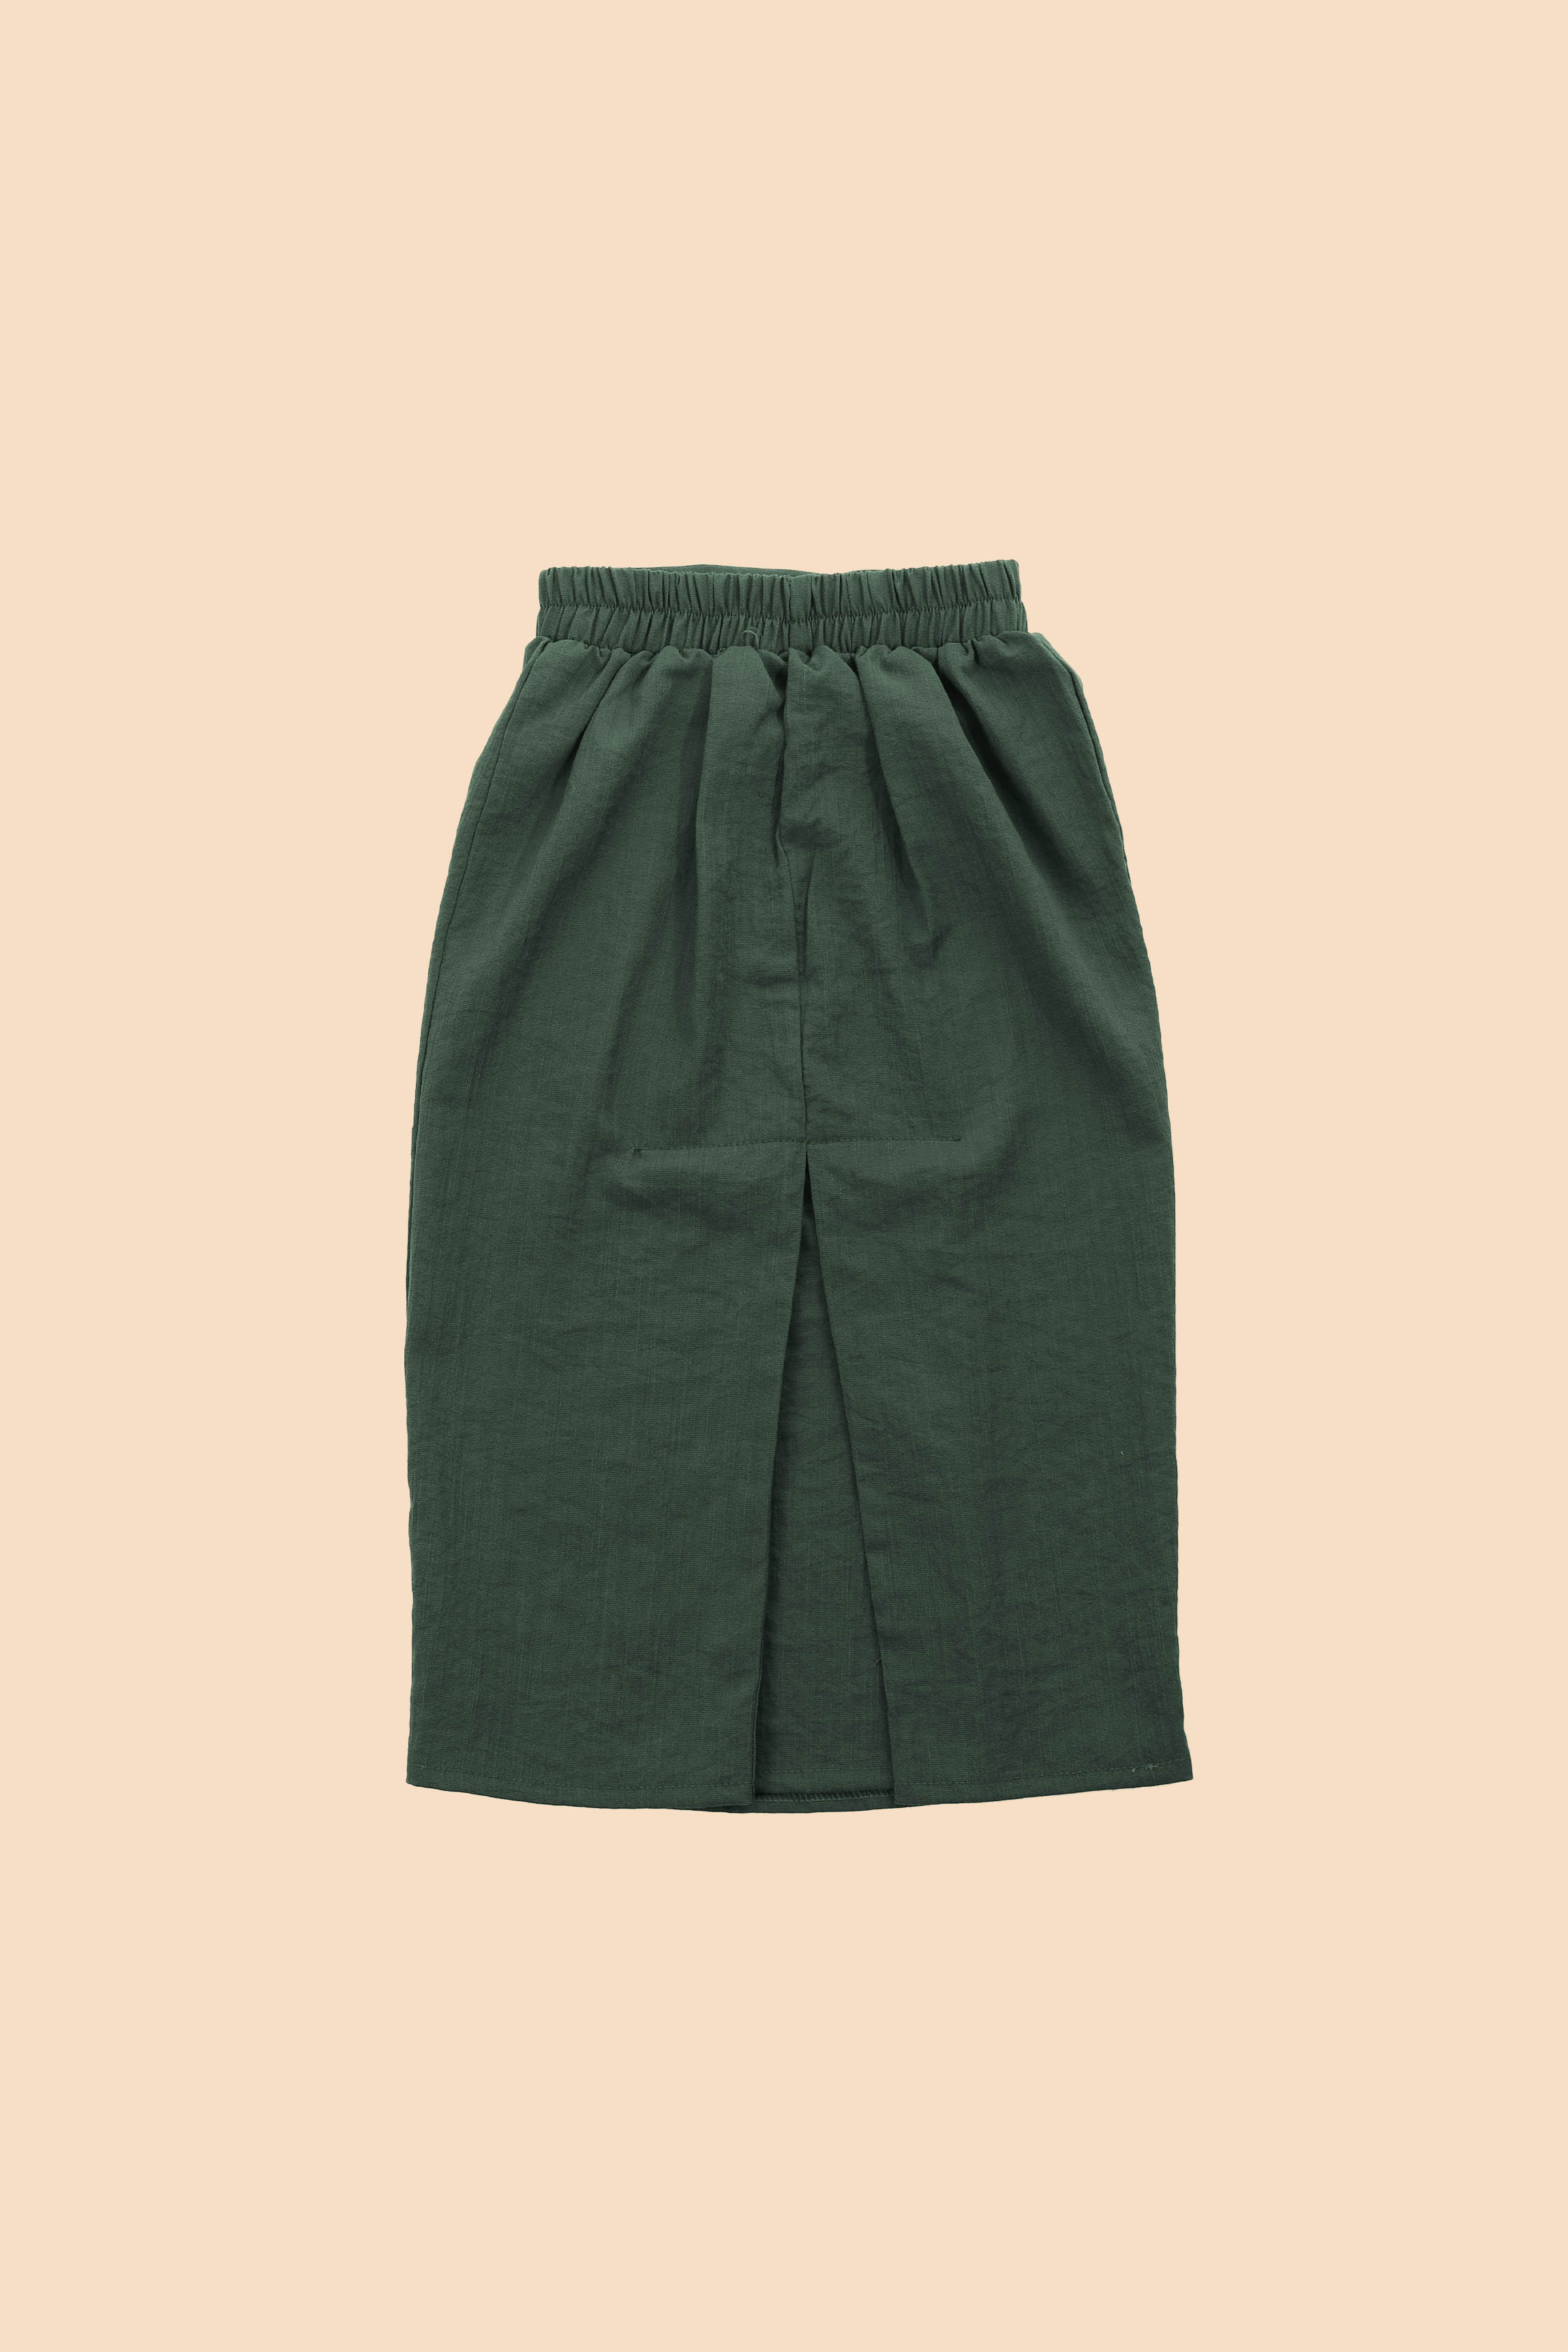 The Matahari Basic Skirt Emerald